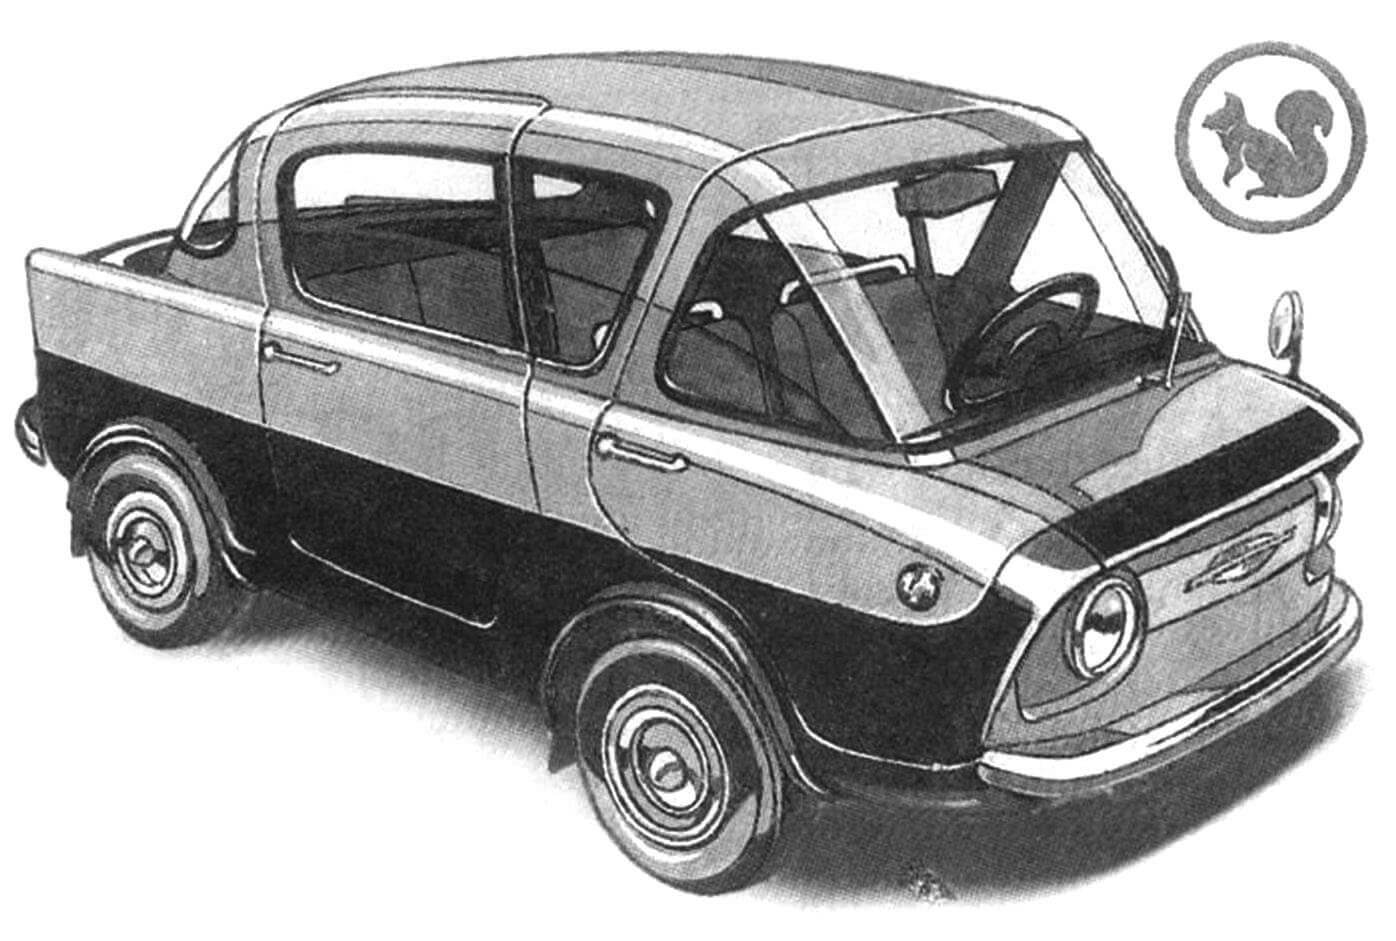 Городская и сельская модификации компактного автомобиля "Белка" конструкции Ю.А. Долмаювского в 1950-е годы были основными претендентами на запуск их в серию в качестве отечественного народного автомобиля. Однако в серию пошли не они..